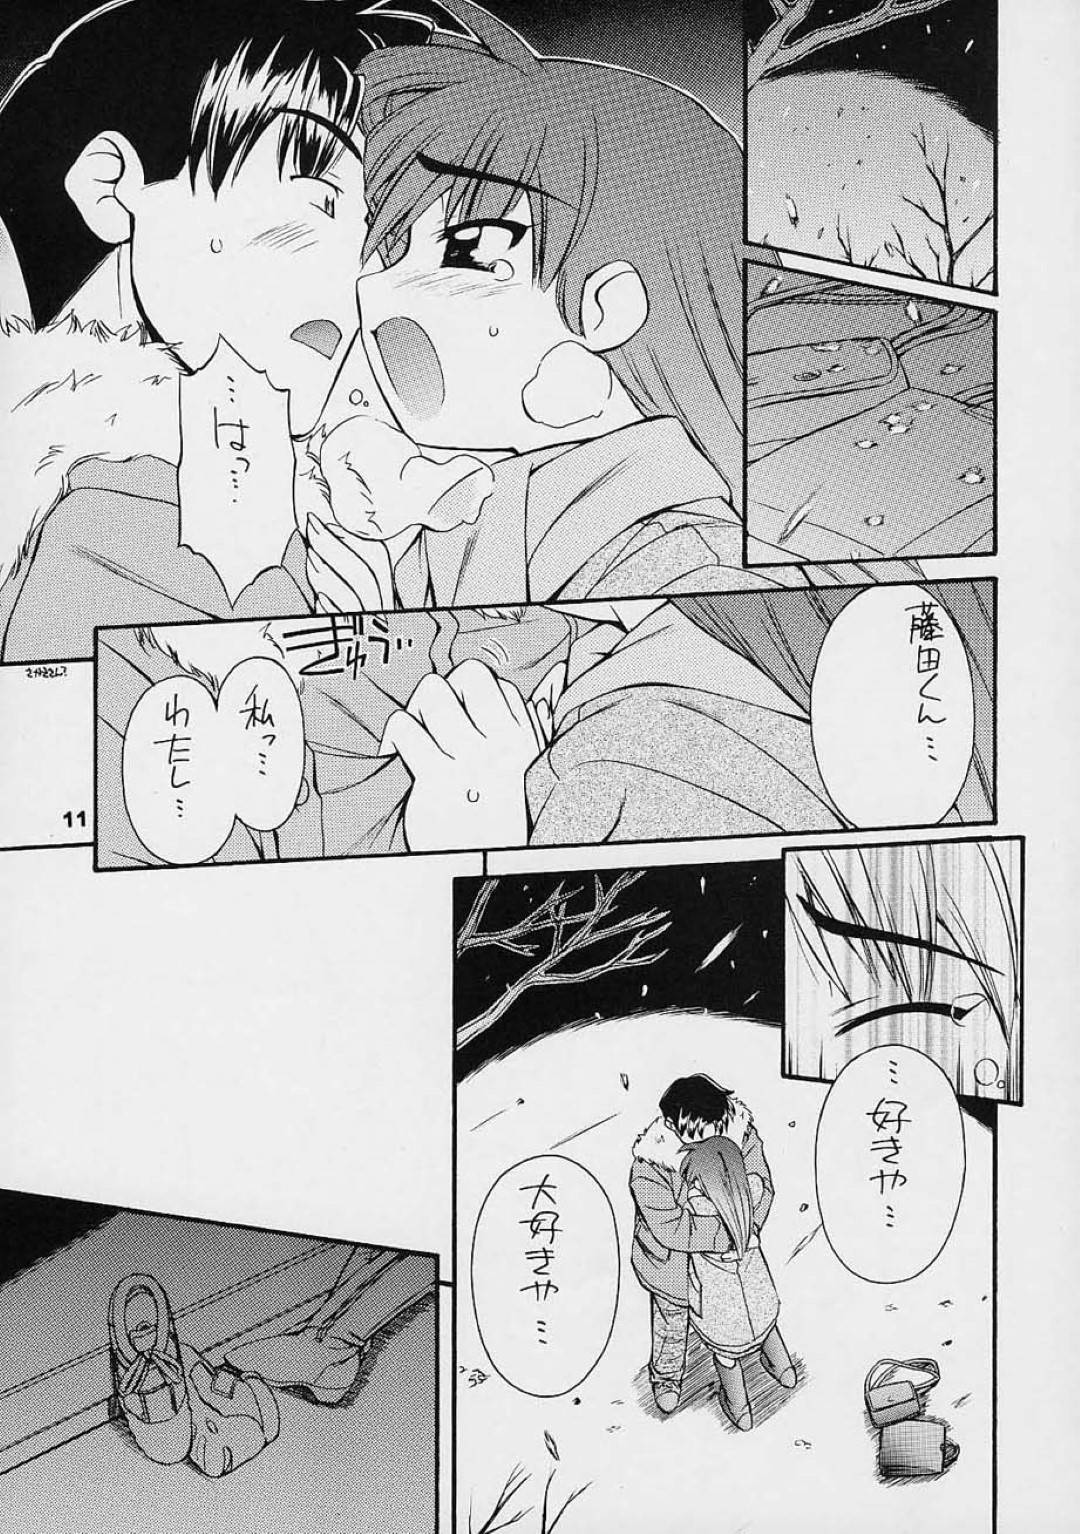 【エロ漫画】藤田に迷惑をかけないように気を使っていた智子に対して藤田は心配させた事を謝るとキスされイチャラブセックス【中島零】